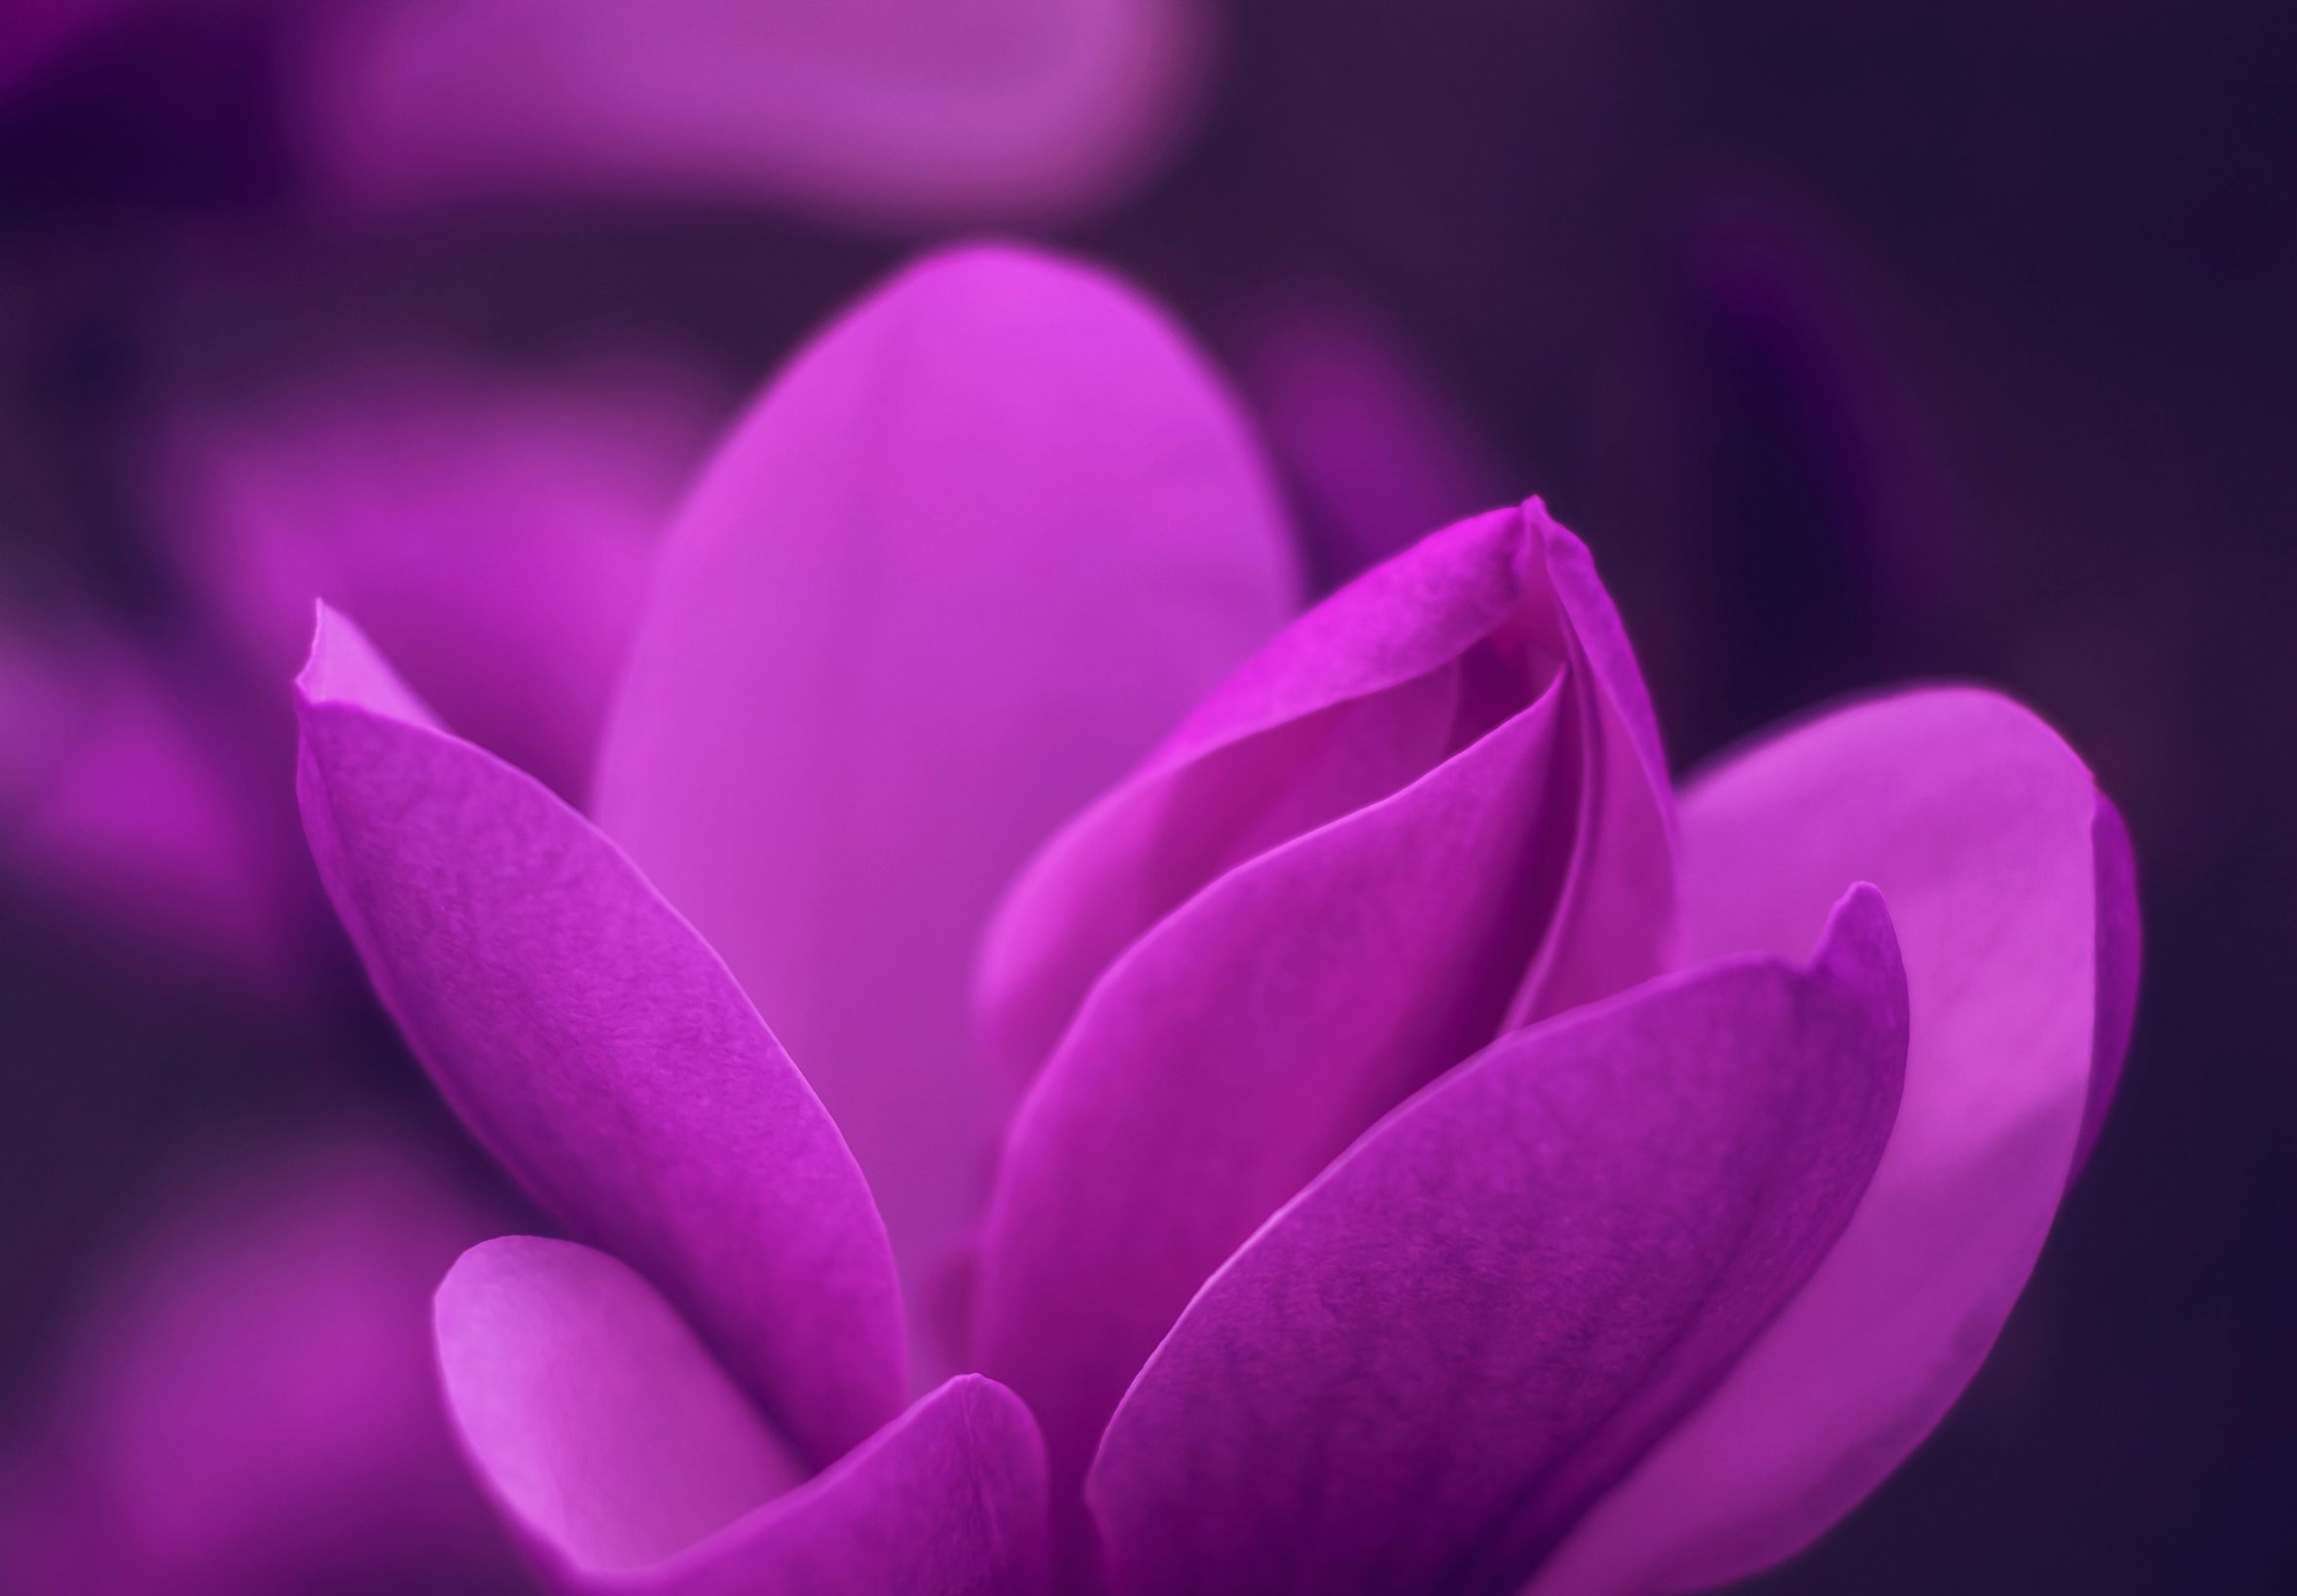 2360x1640 iPad Air wallpaper 4k Purple Bloom Blossom Petaled Flower iPad Wallpaper 2360x1640 pixels resolution